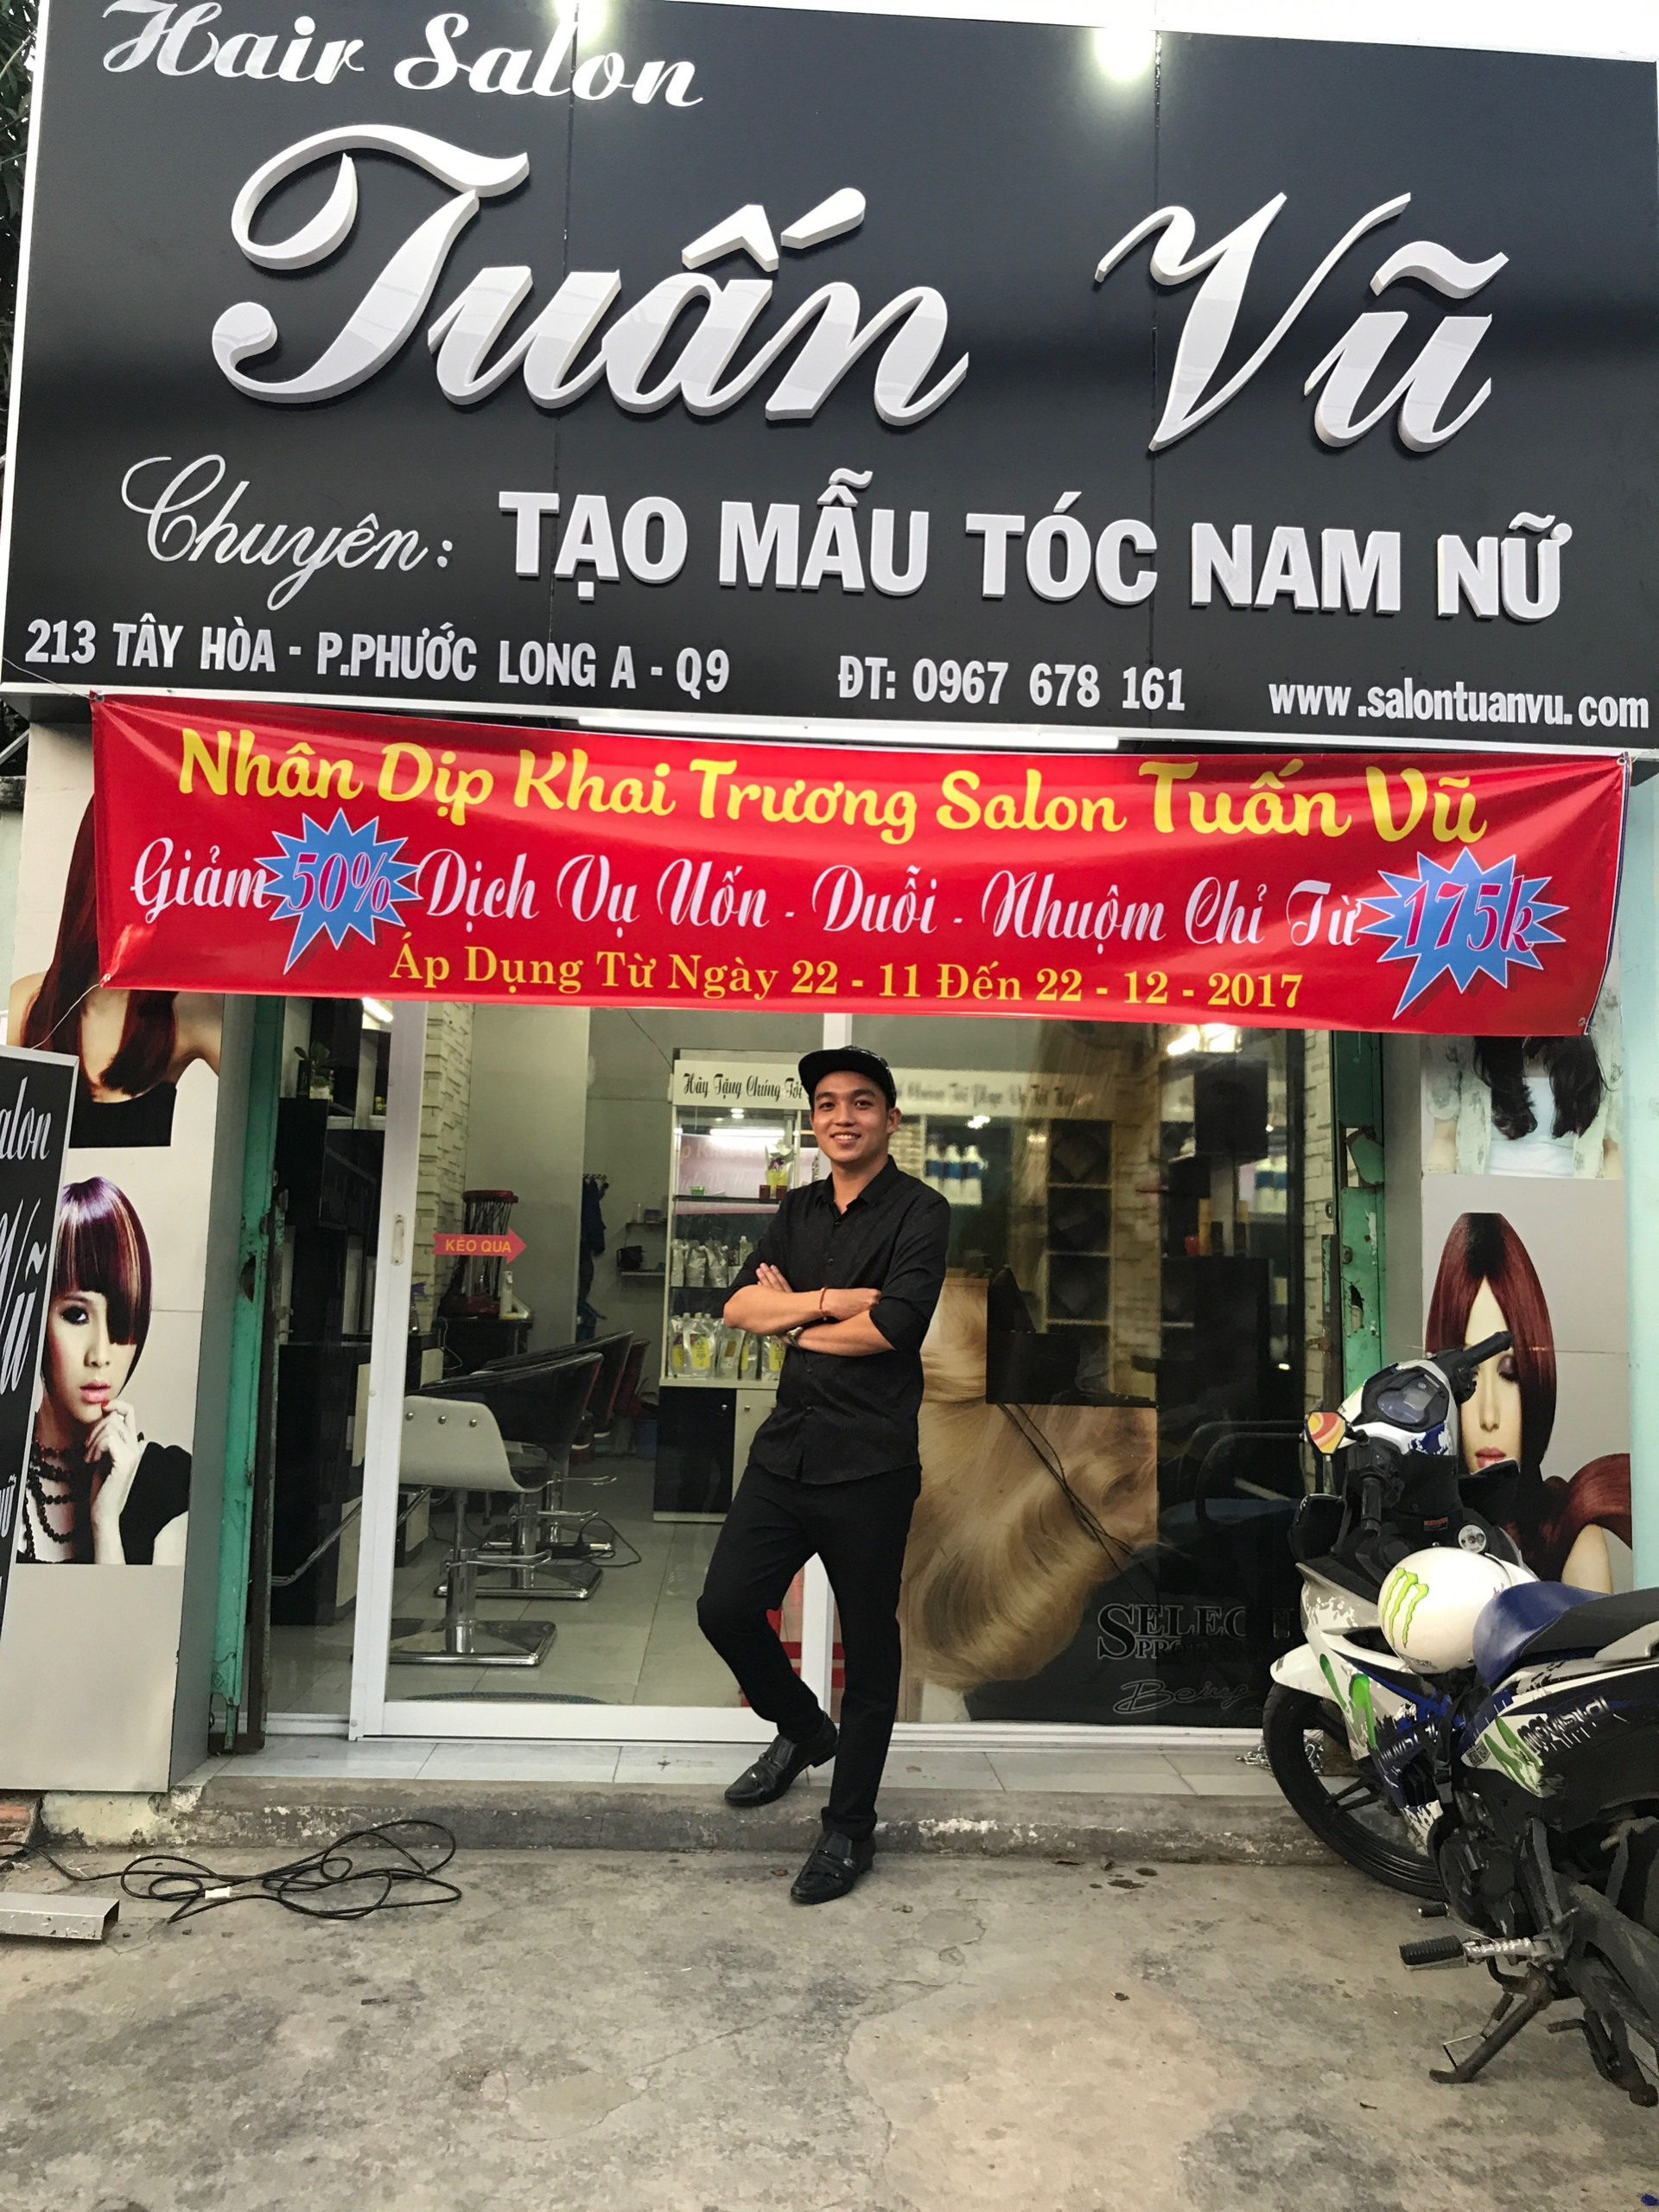 30Shine - chuỗi salon tóc nam lớn nhất Việt Nam được đầu tư gần 15 triệu USD